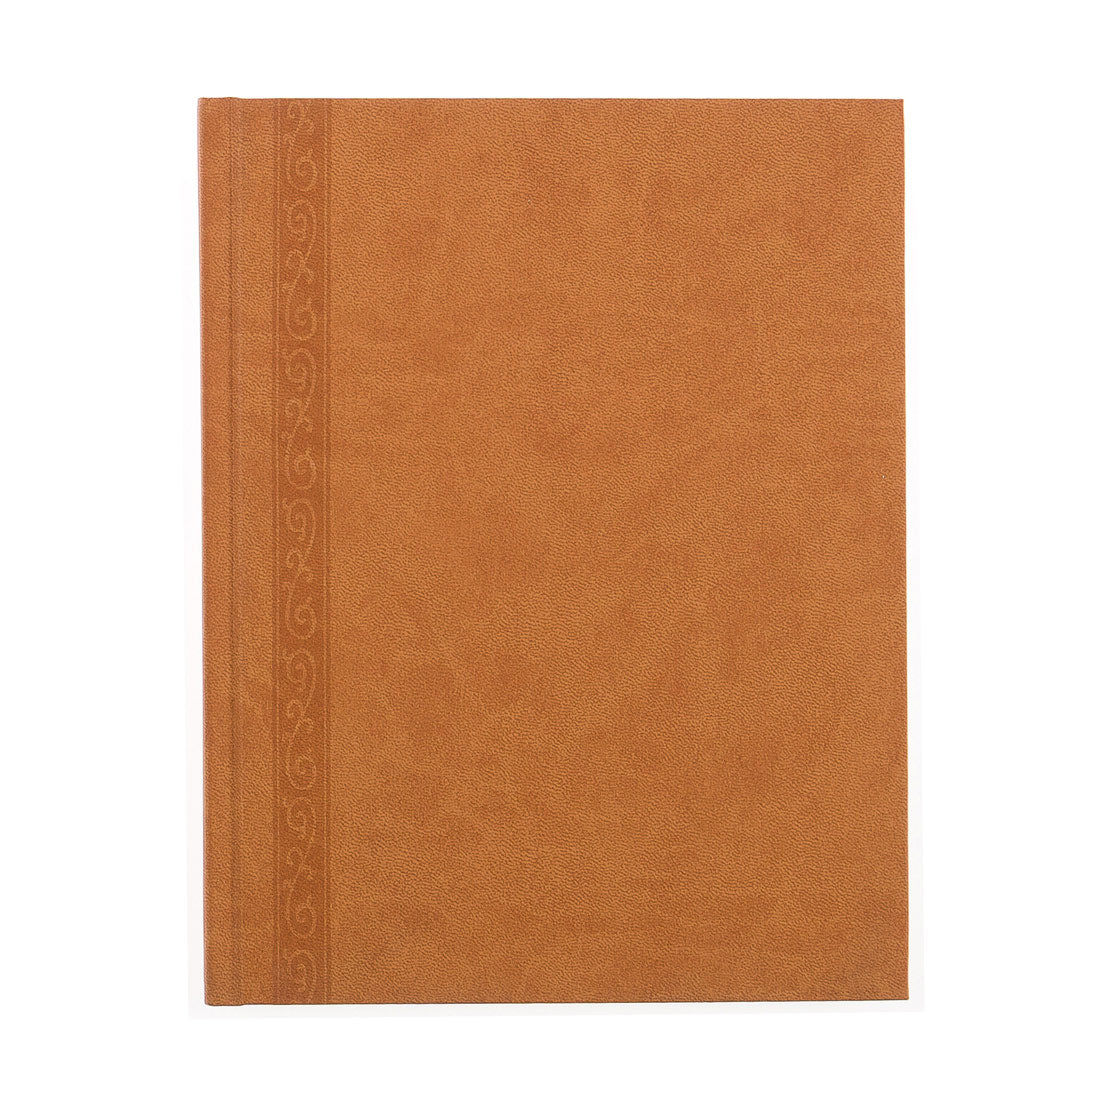 Executive Journal Da Vinci Collection, A8005